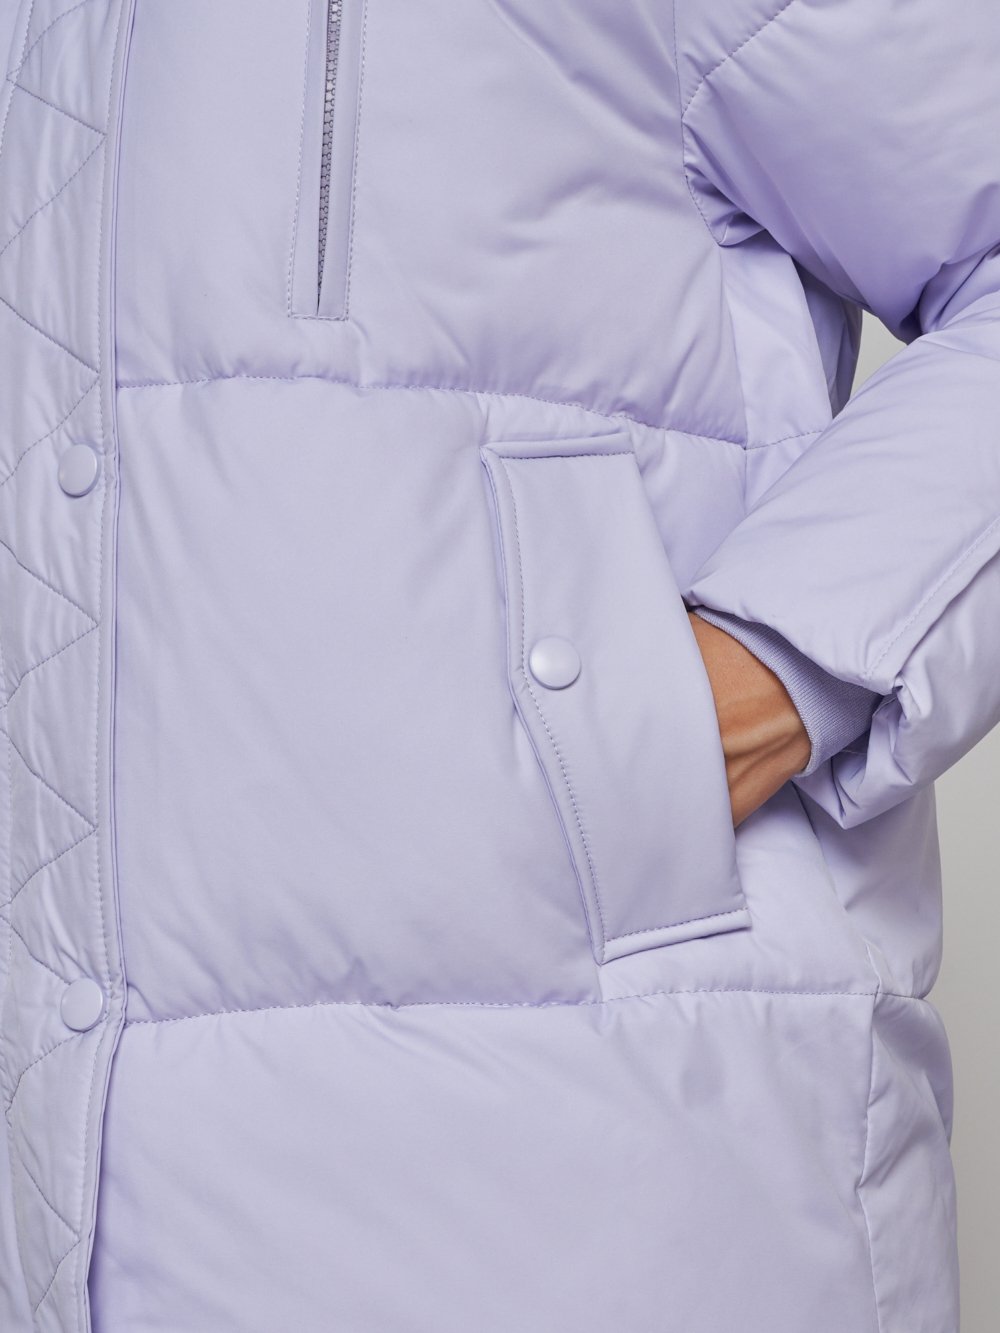 Купить куртку зимнюю оптом от производителя недорого в Москве 52308F 1